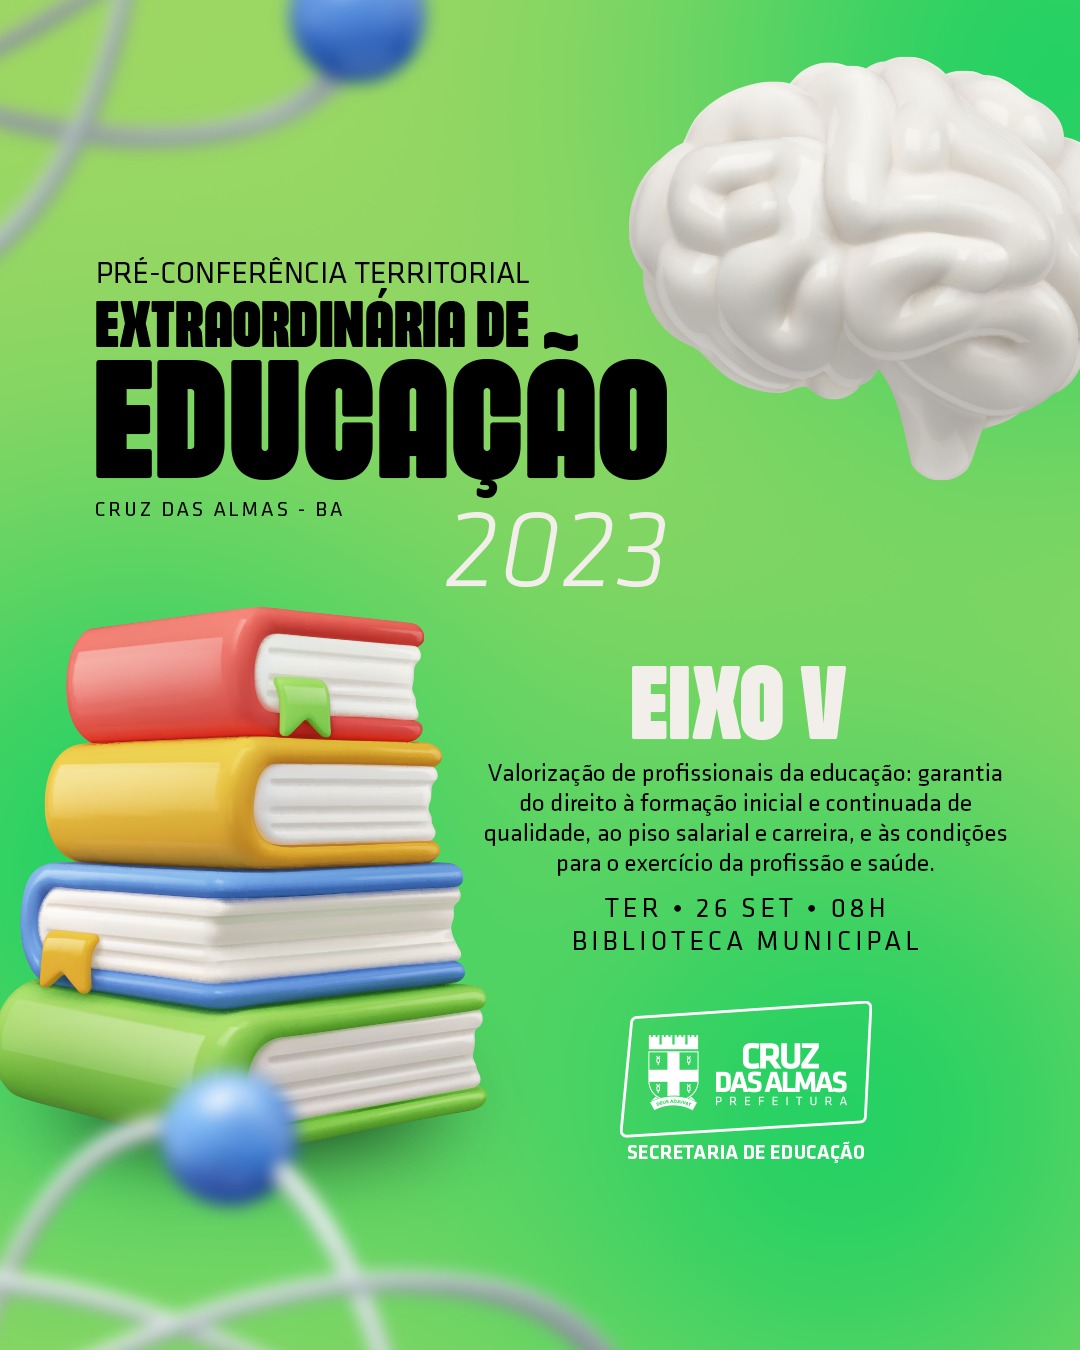 Pré-Conferência Extraordinária de Educação será realizada nesta terça-feira (26)